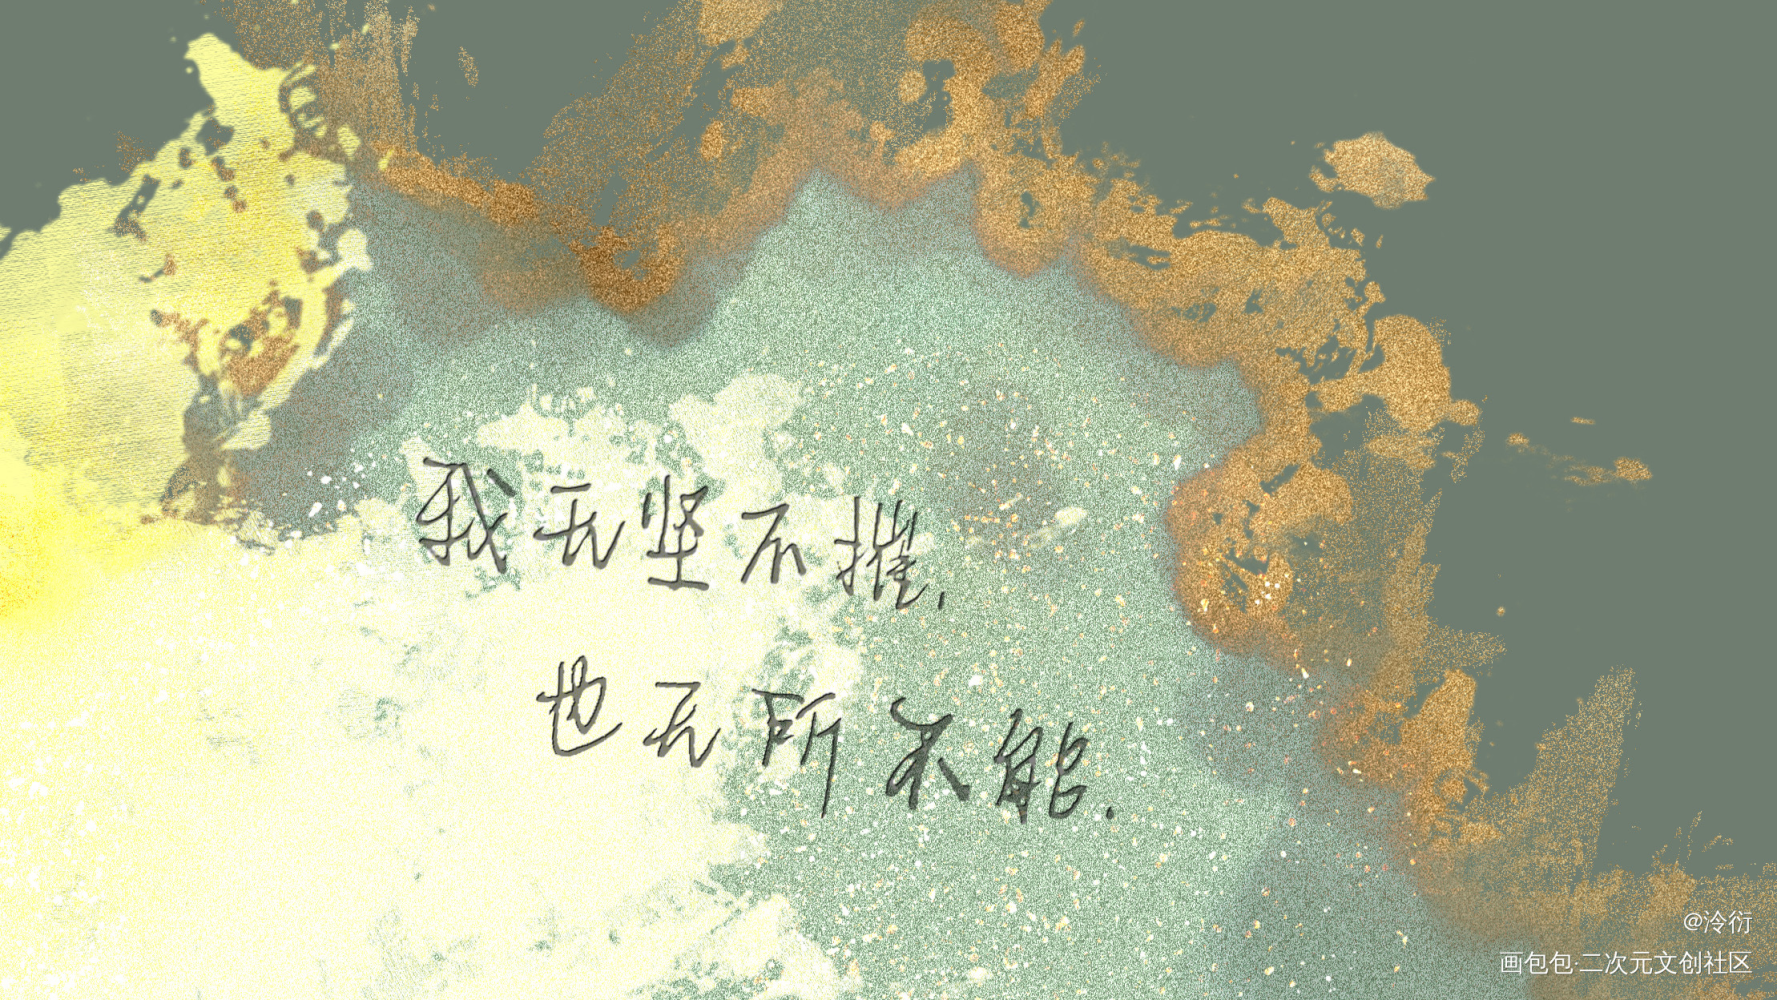 木苏里壁纸 文字图片